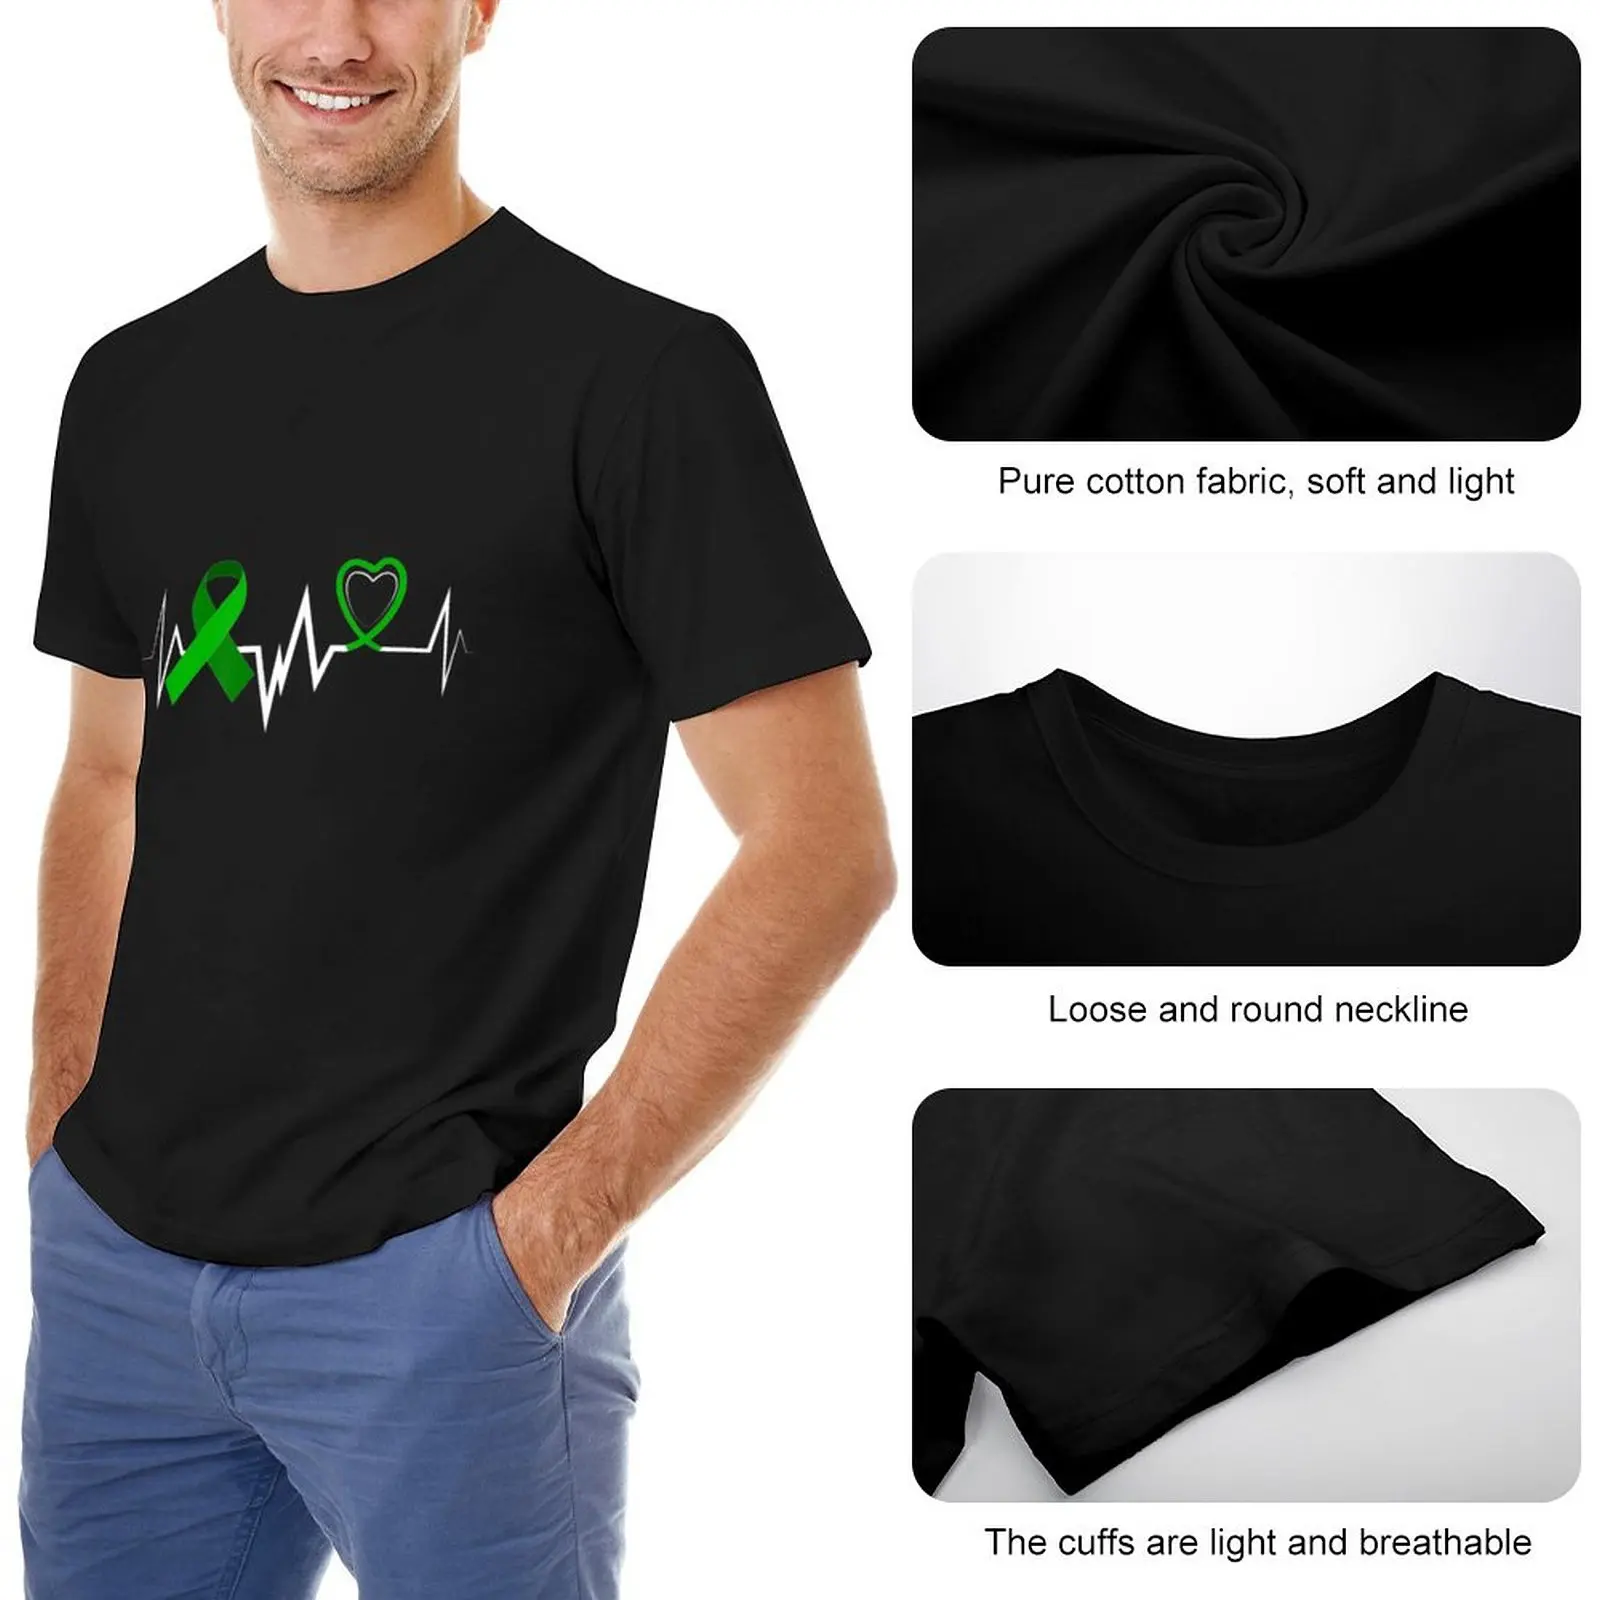 Kalp atışı Yeşil Şerit Böbrek Hastalığı Farkındalık T-Shirt erkek t shirt özel t shirt slim fit t shirt erkekler için